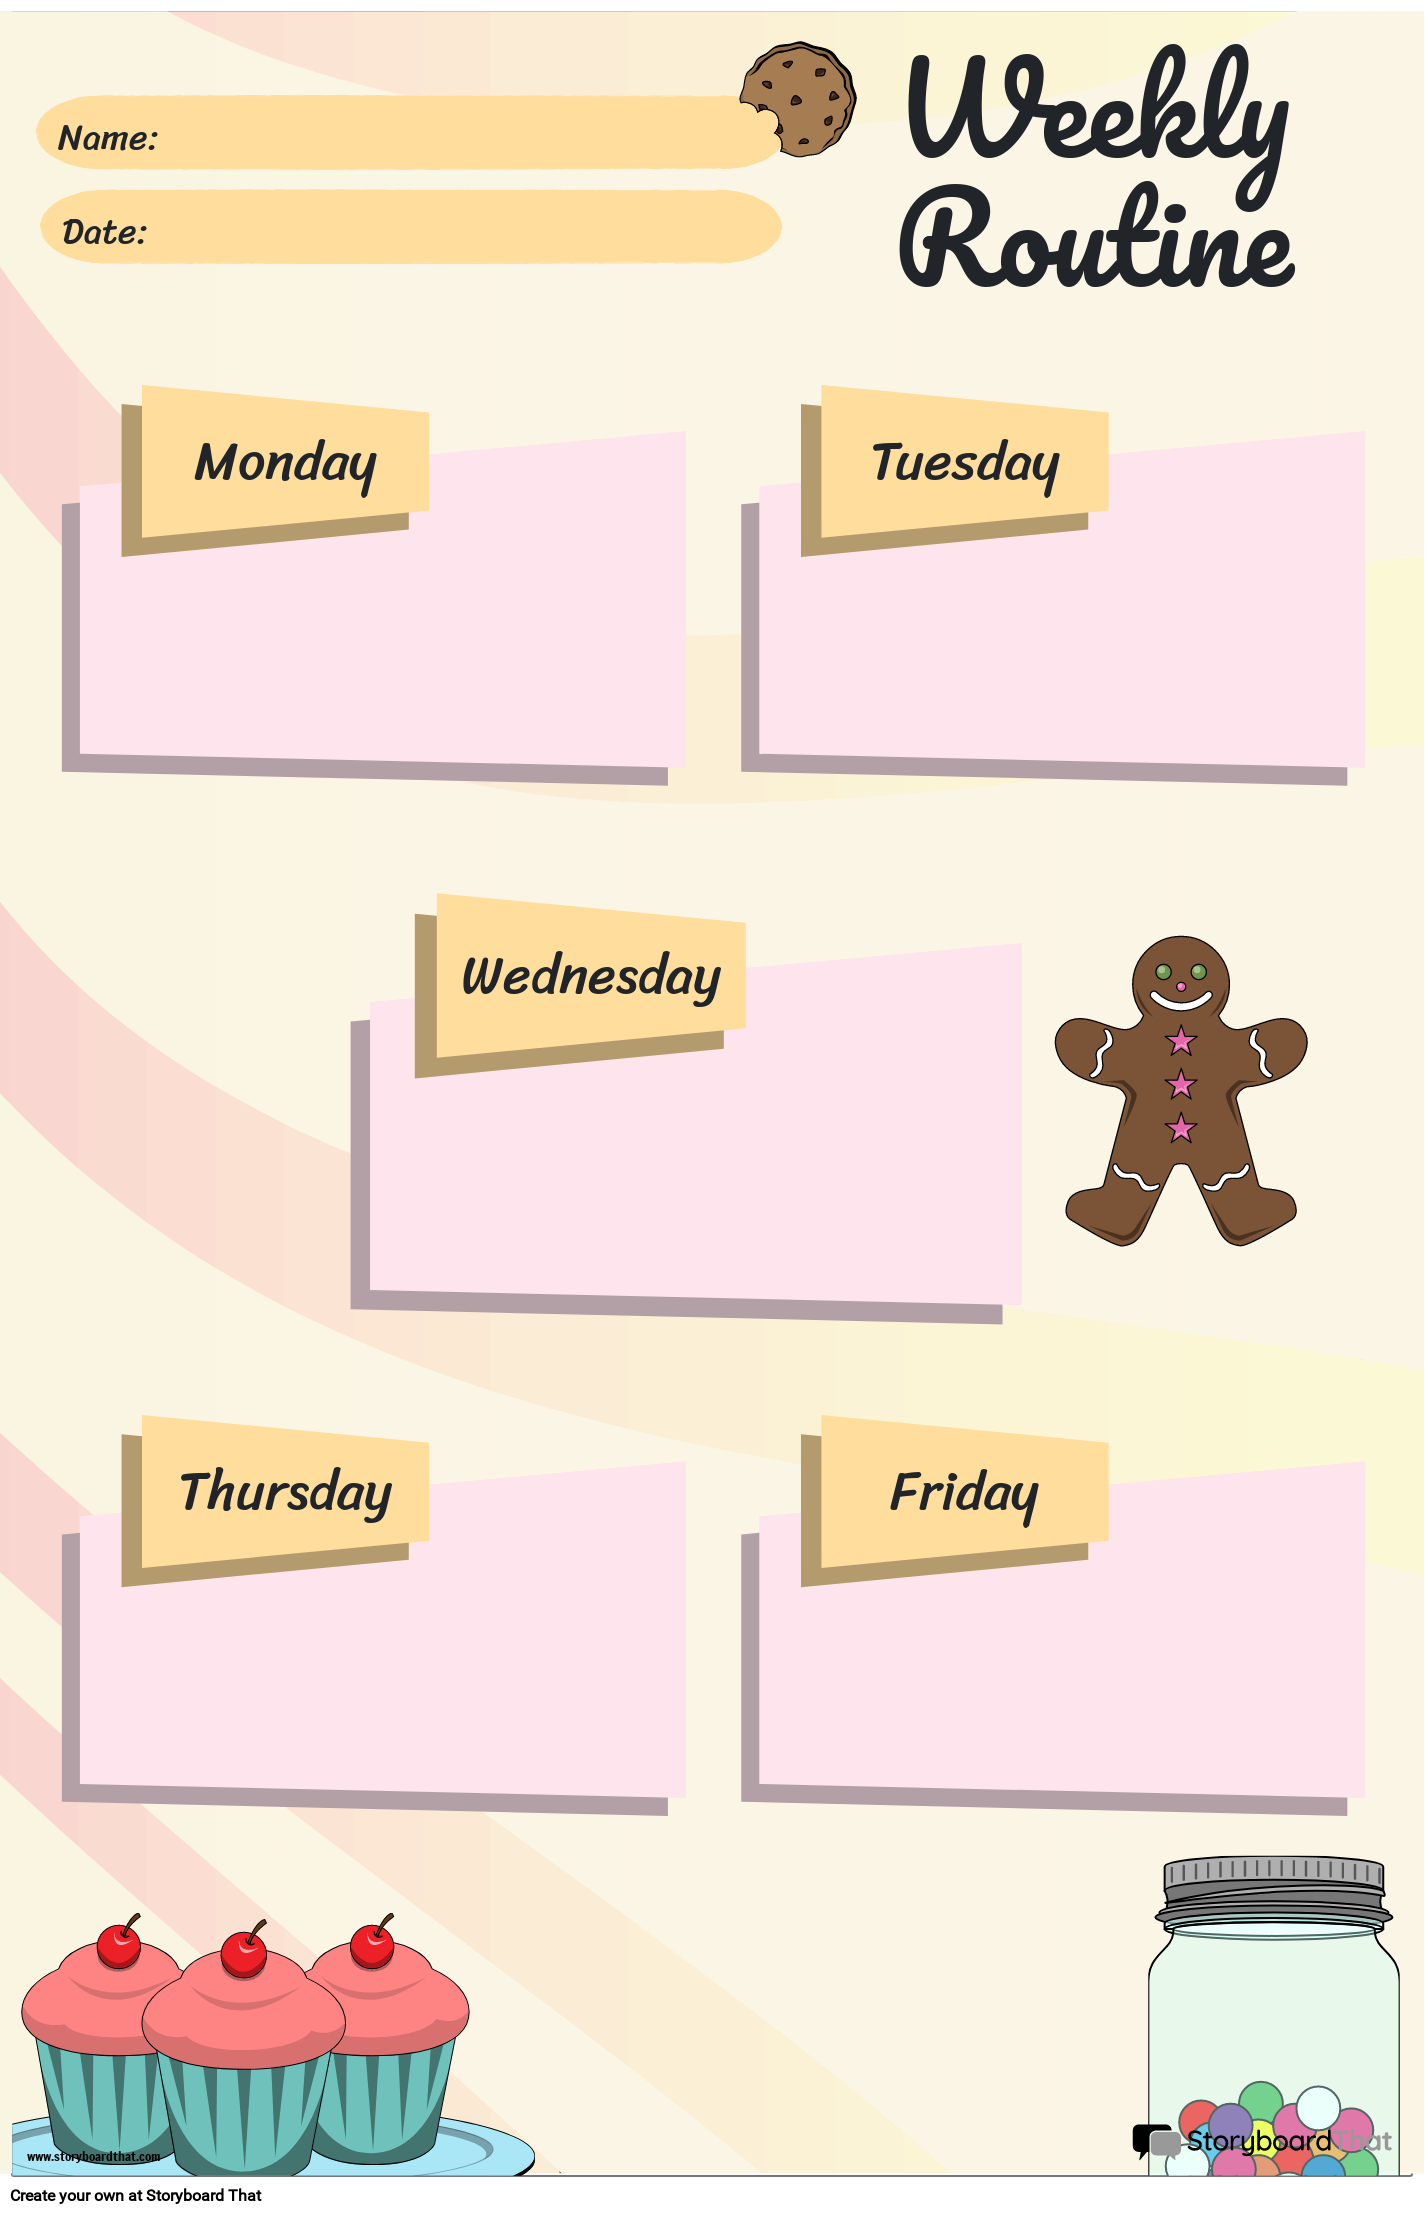 Dessert-Themed Weekly Routine Schedule